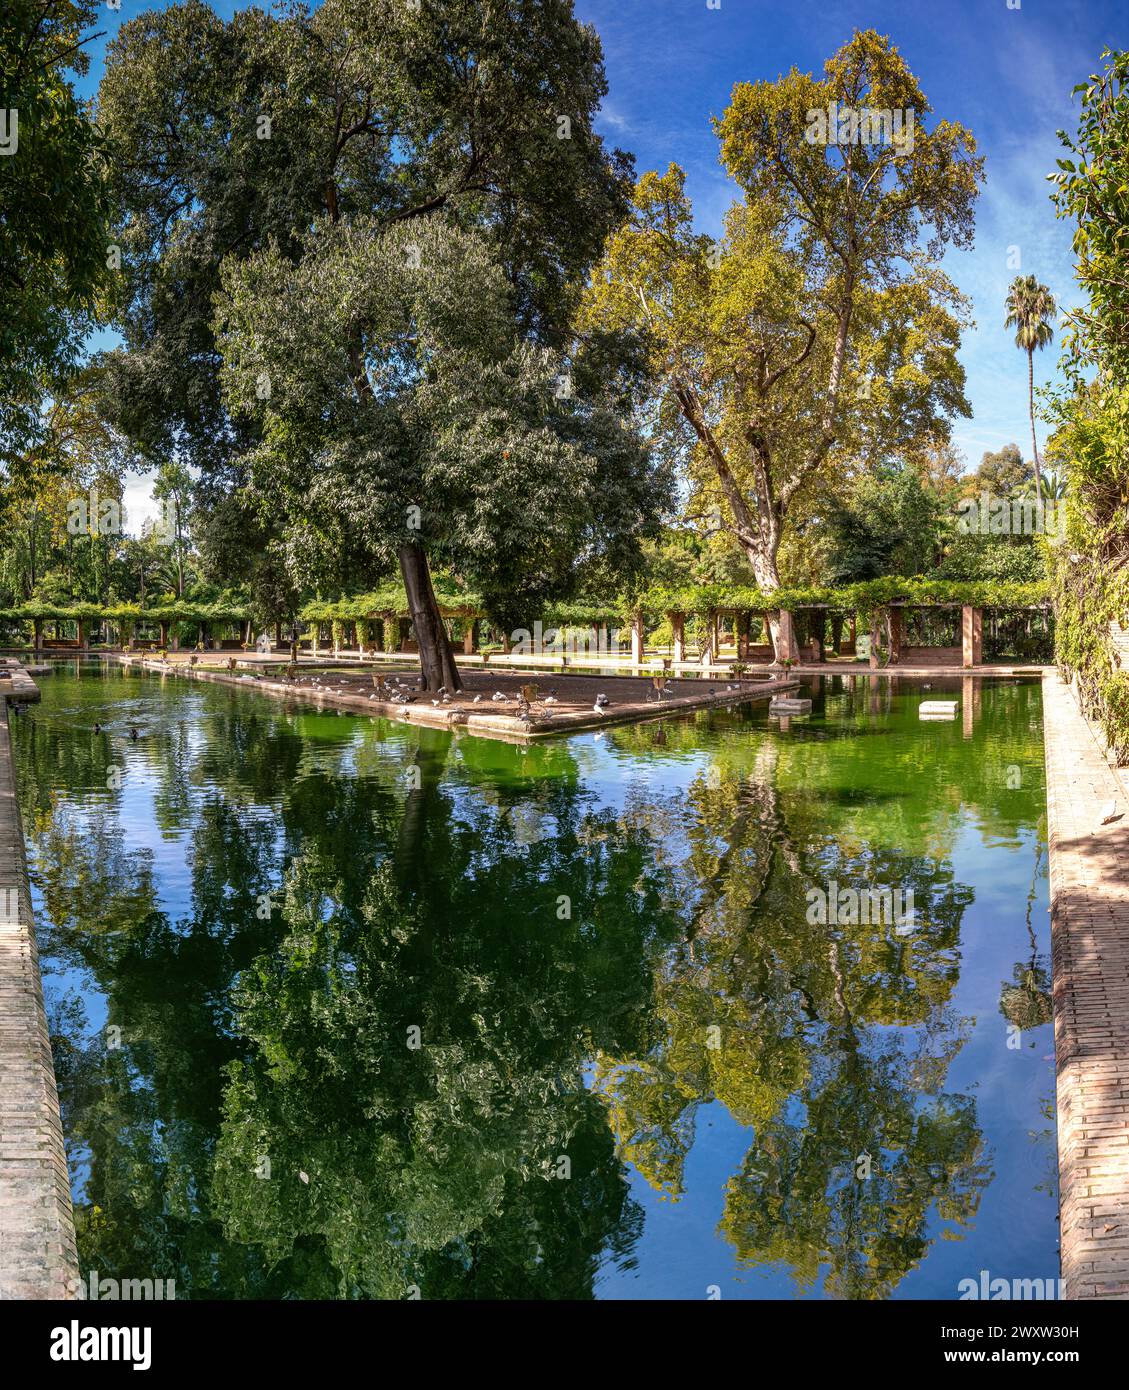 La Glorieta de los Lotos (belvédère de lotus) dans le parc Maria Luisa de Séville reflète une végétation luxuriante dans des eaux tranquilles. Banque D'Images